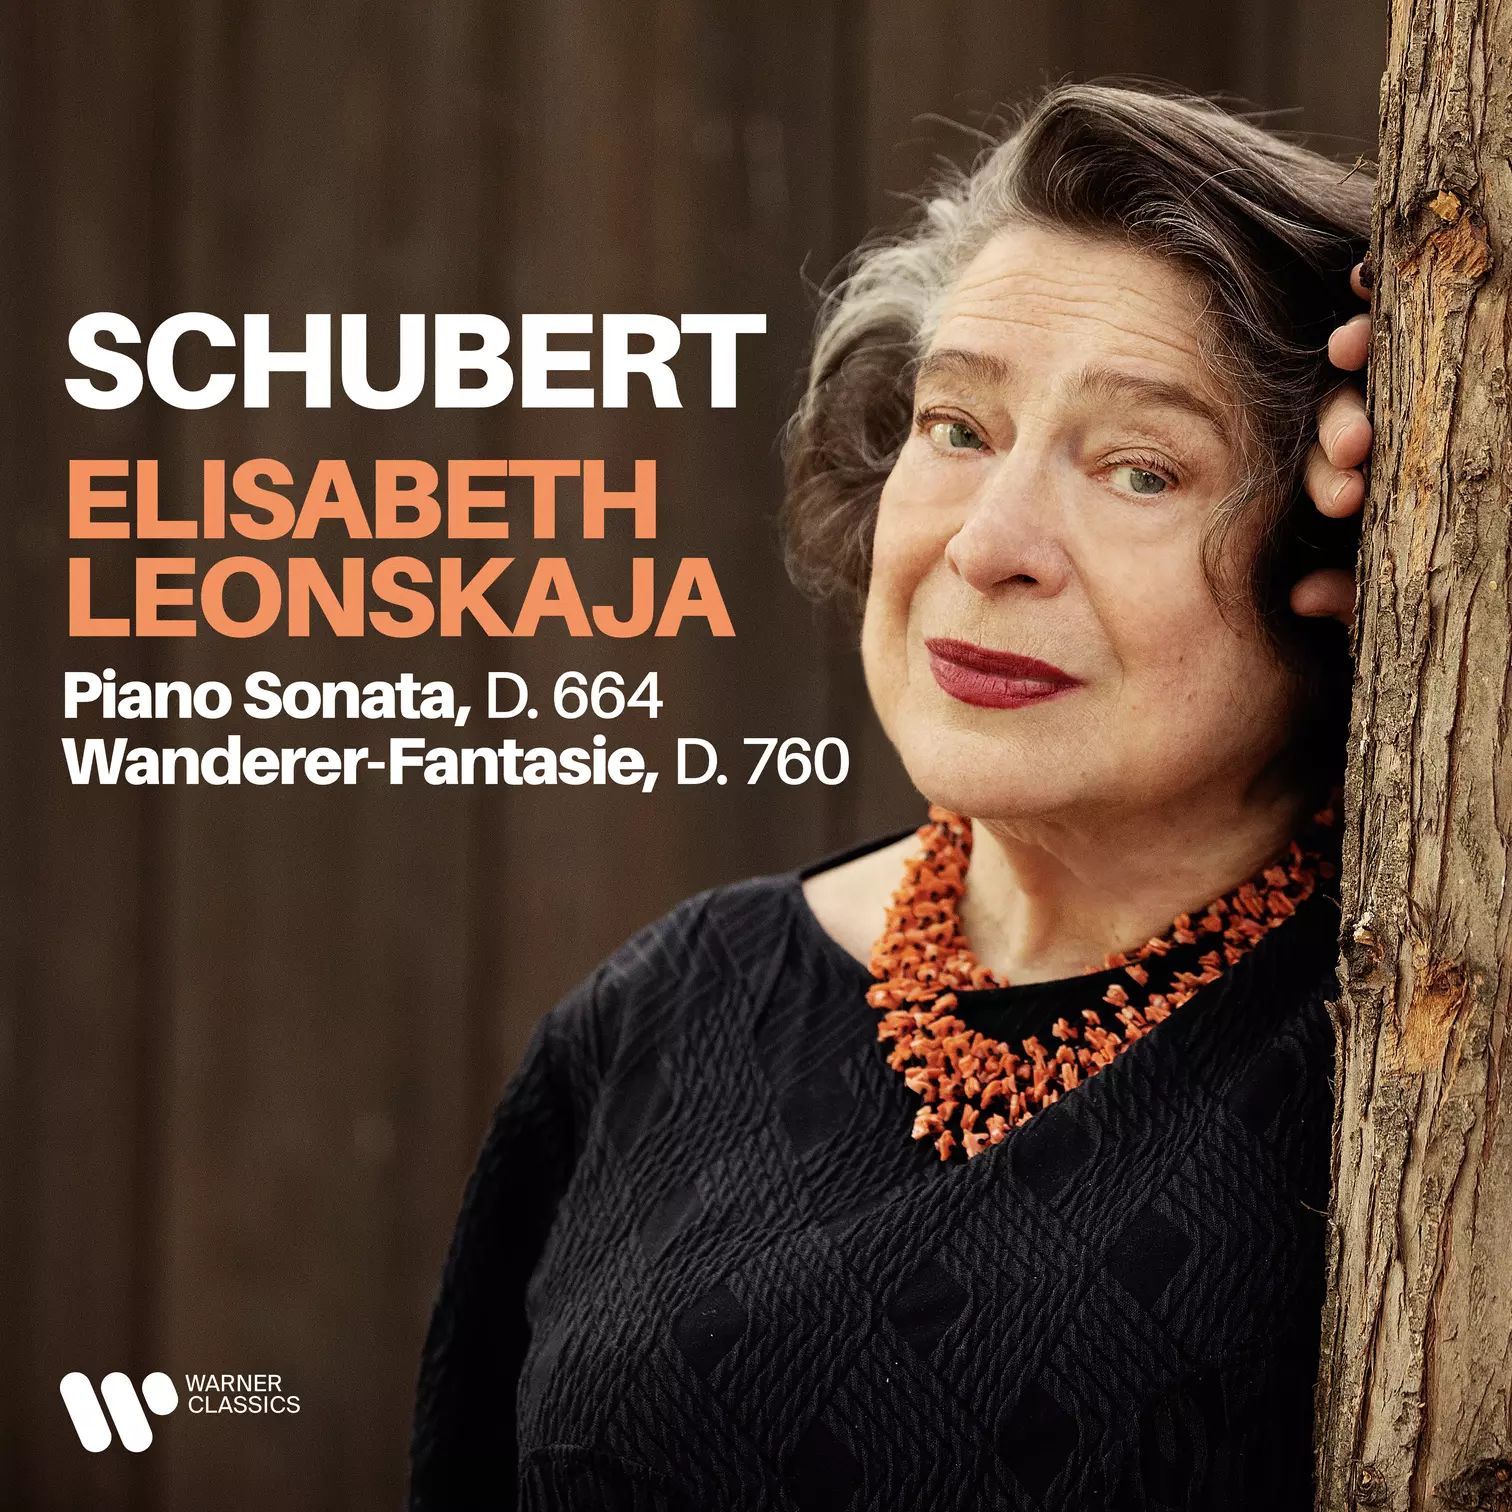 Schubert: Piano Sonata, D. 664 & Wanderer-Fantasie, D. 760